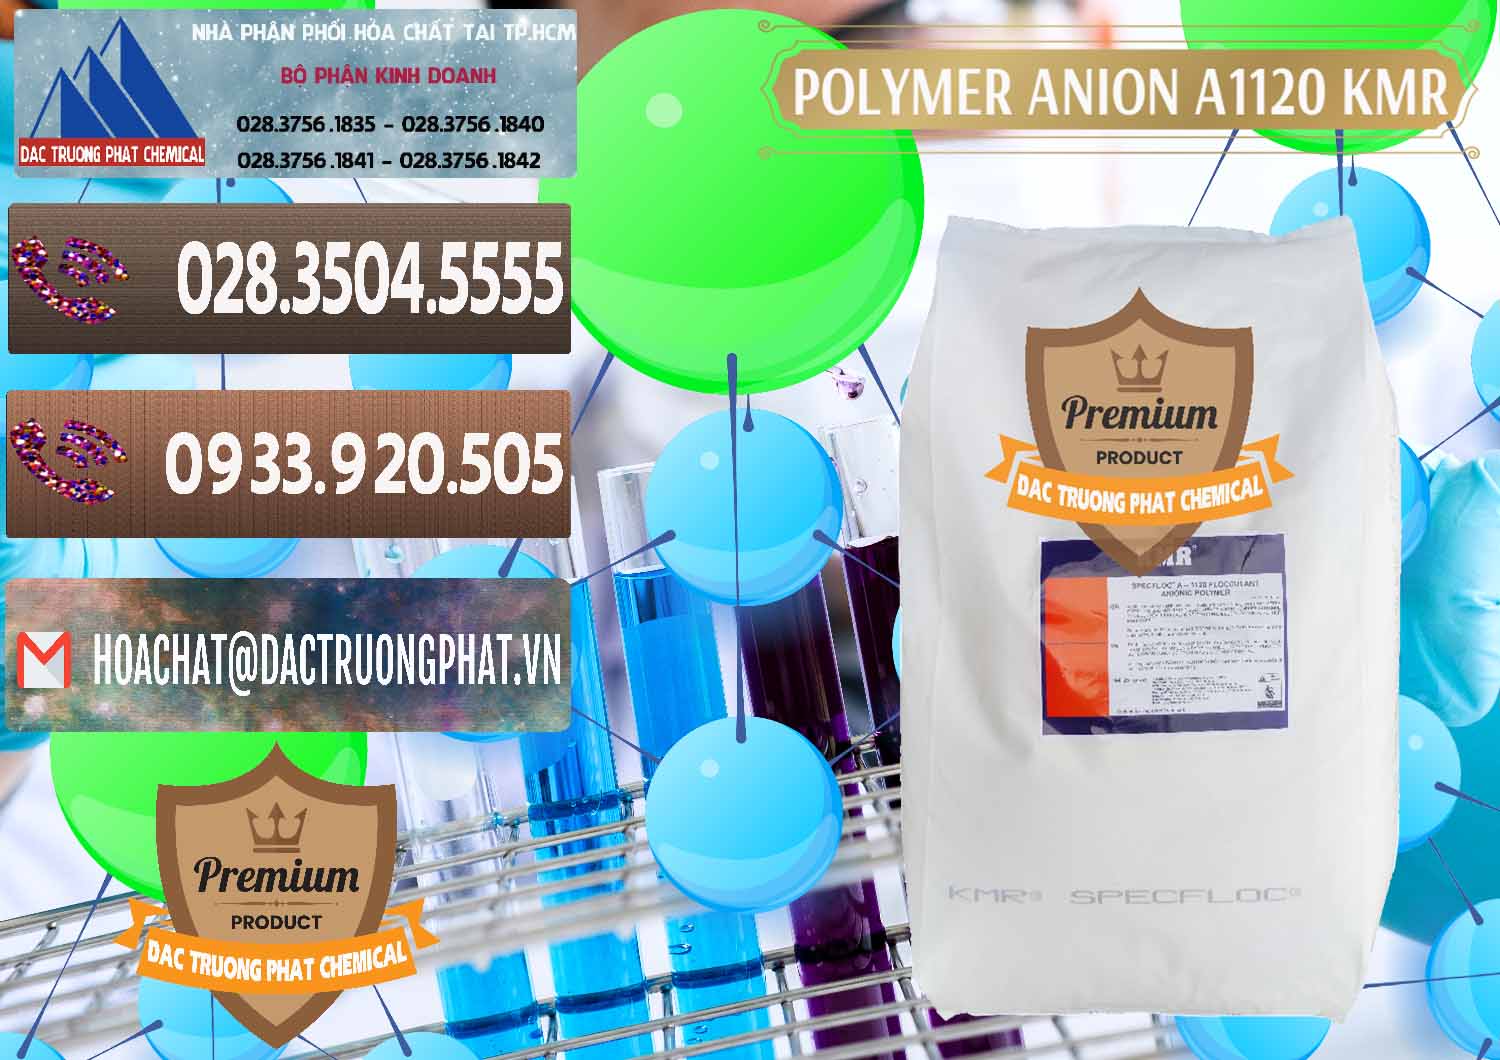 Đơn vị cung cấp & bán Polymer Anion A1120 - KMR Anh Quốc England - 0119 - Công ty chuyên phân phối & bán hóa chất tại TP.HCM - hoachatviet.net